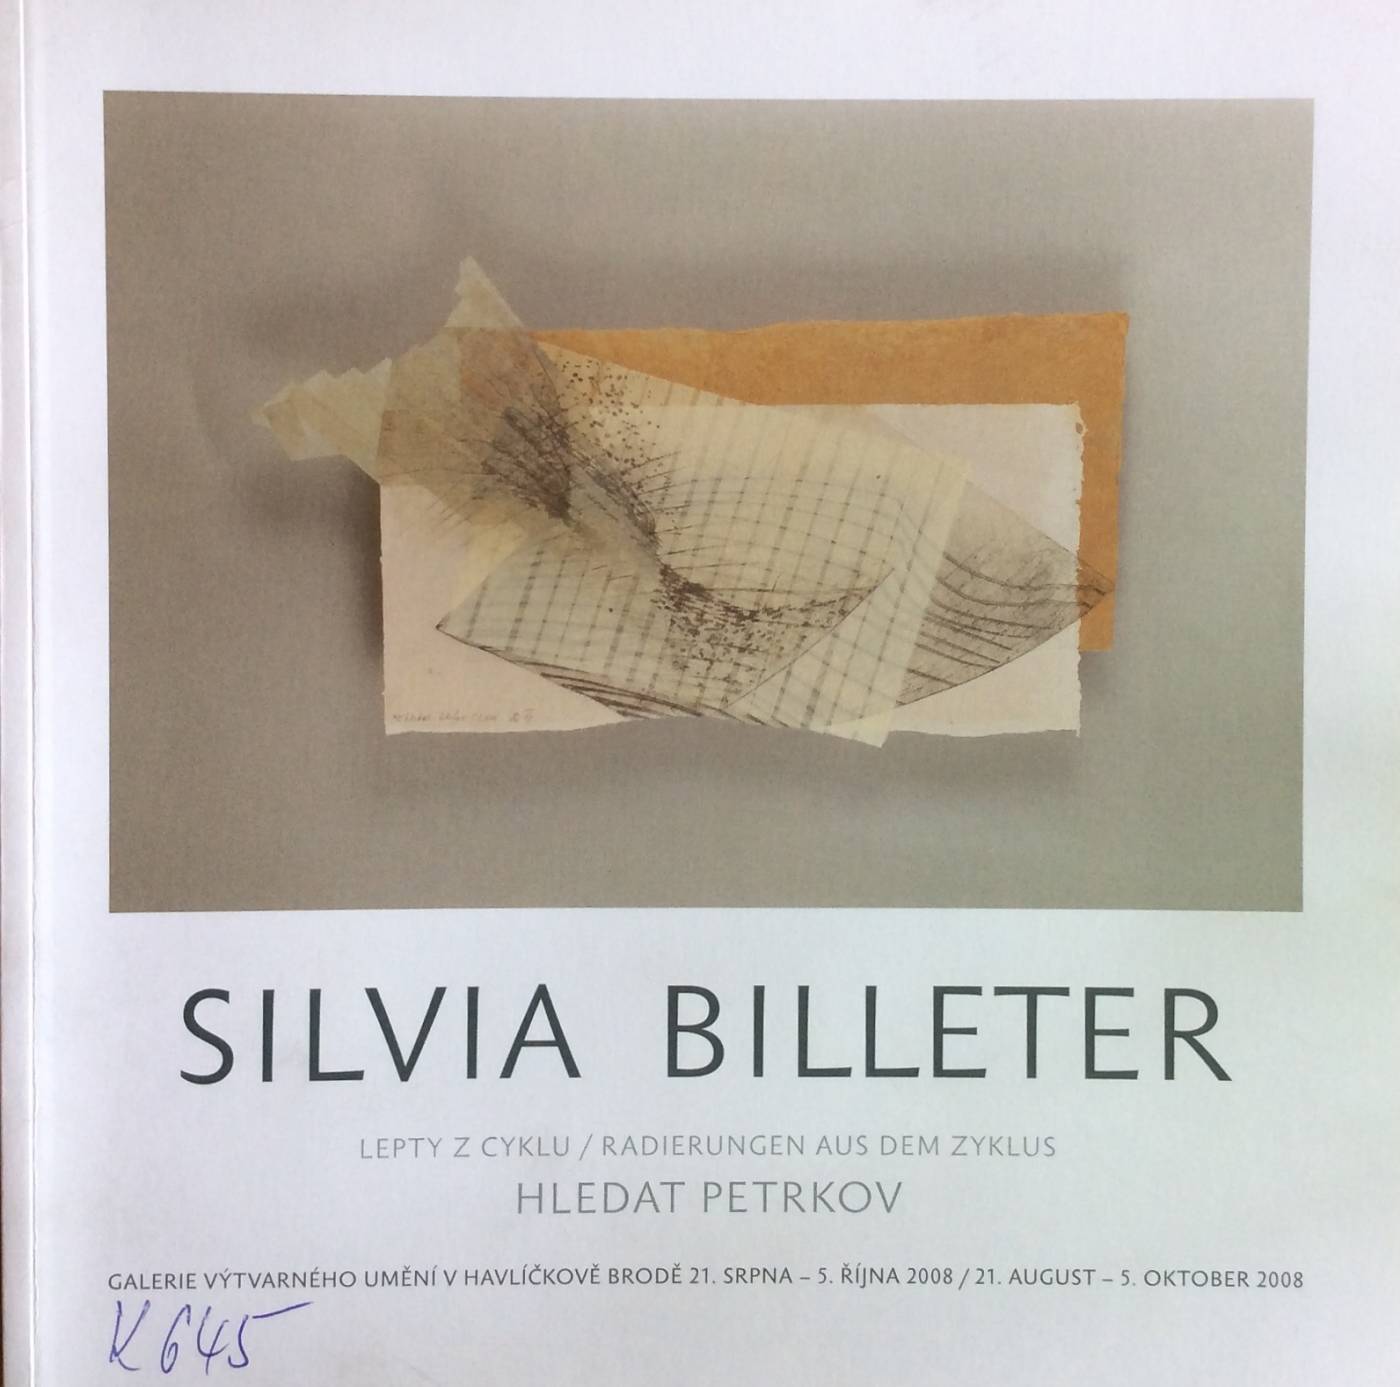 Silvia Billeter – lepty z cyklu Hledat Petrkov / Radierungen aus dem zyklus Hledat Petrkov